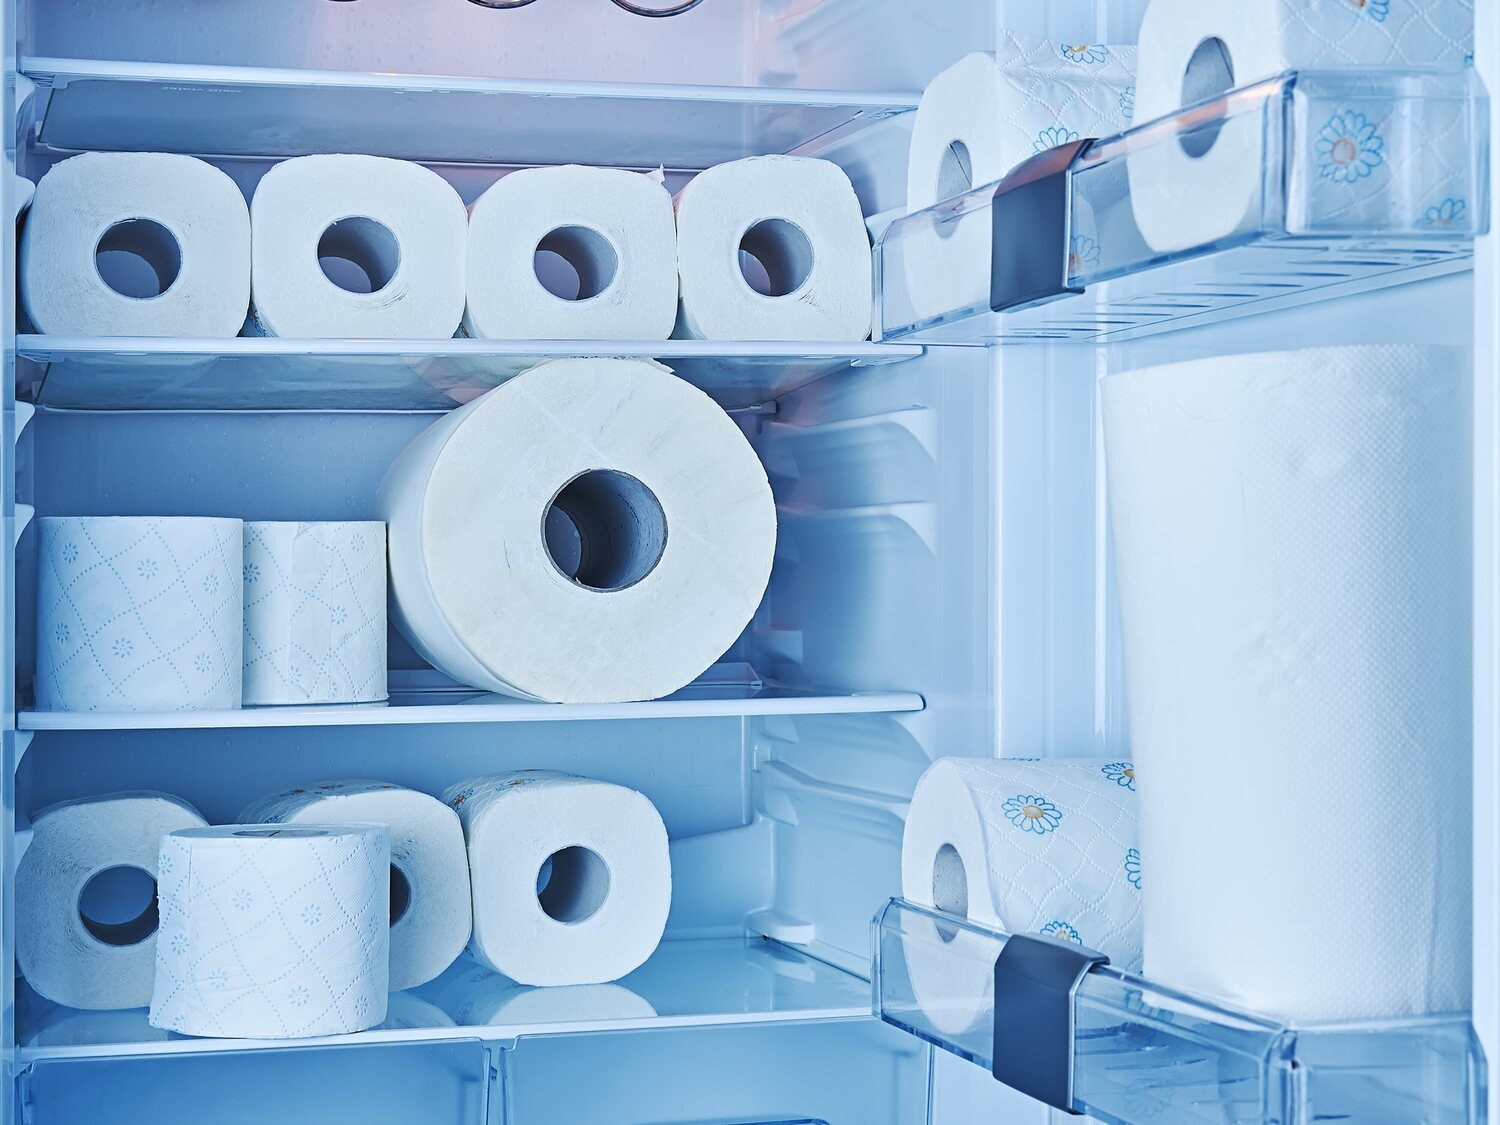 Meter papel higiénico en la nevera: el truco viral que te cambiará la vida